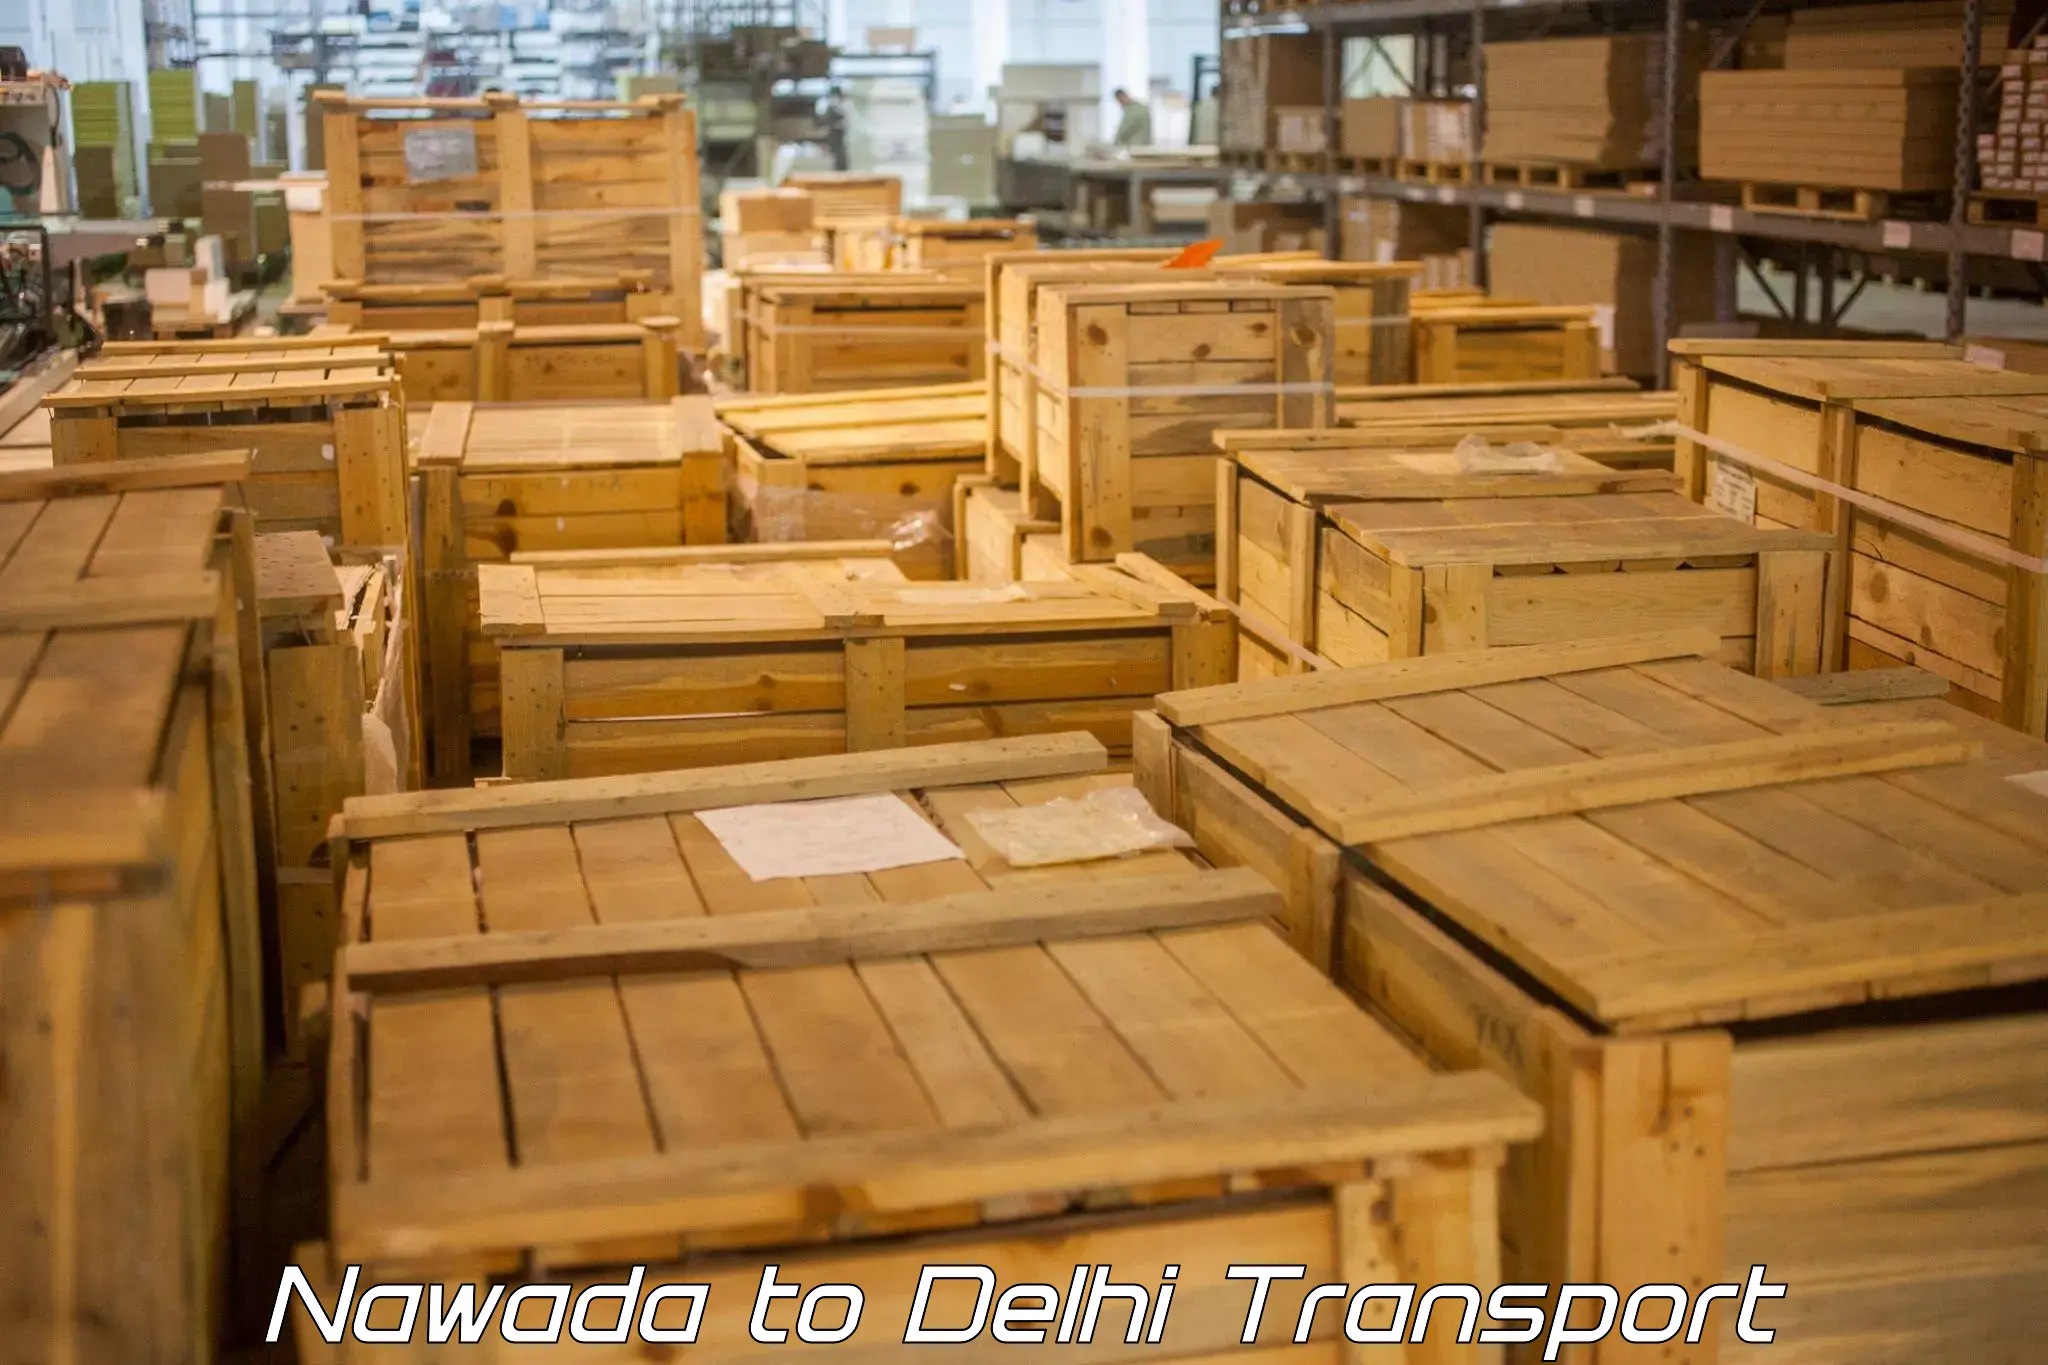 Daily transport service Nawada to Ashok Vihar